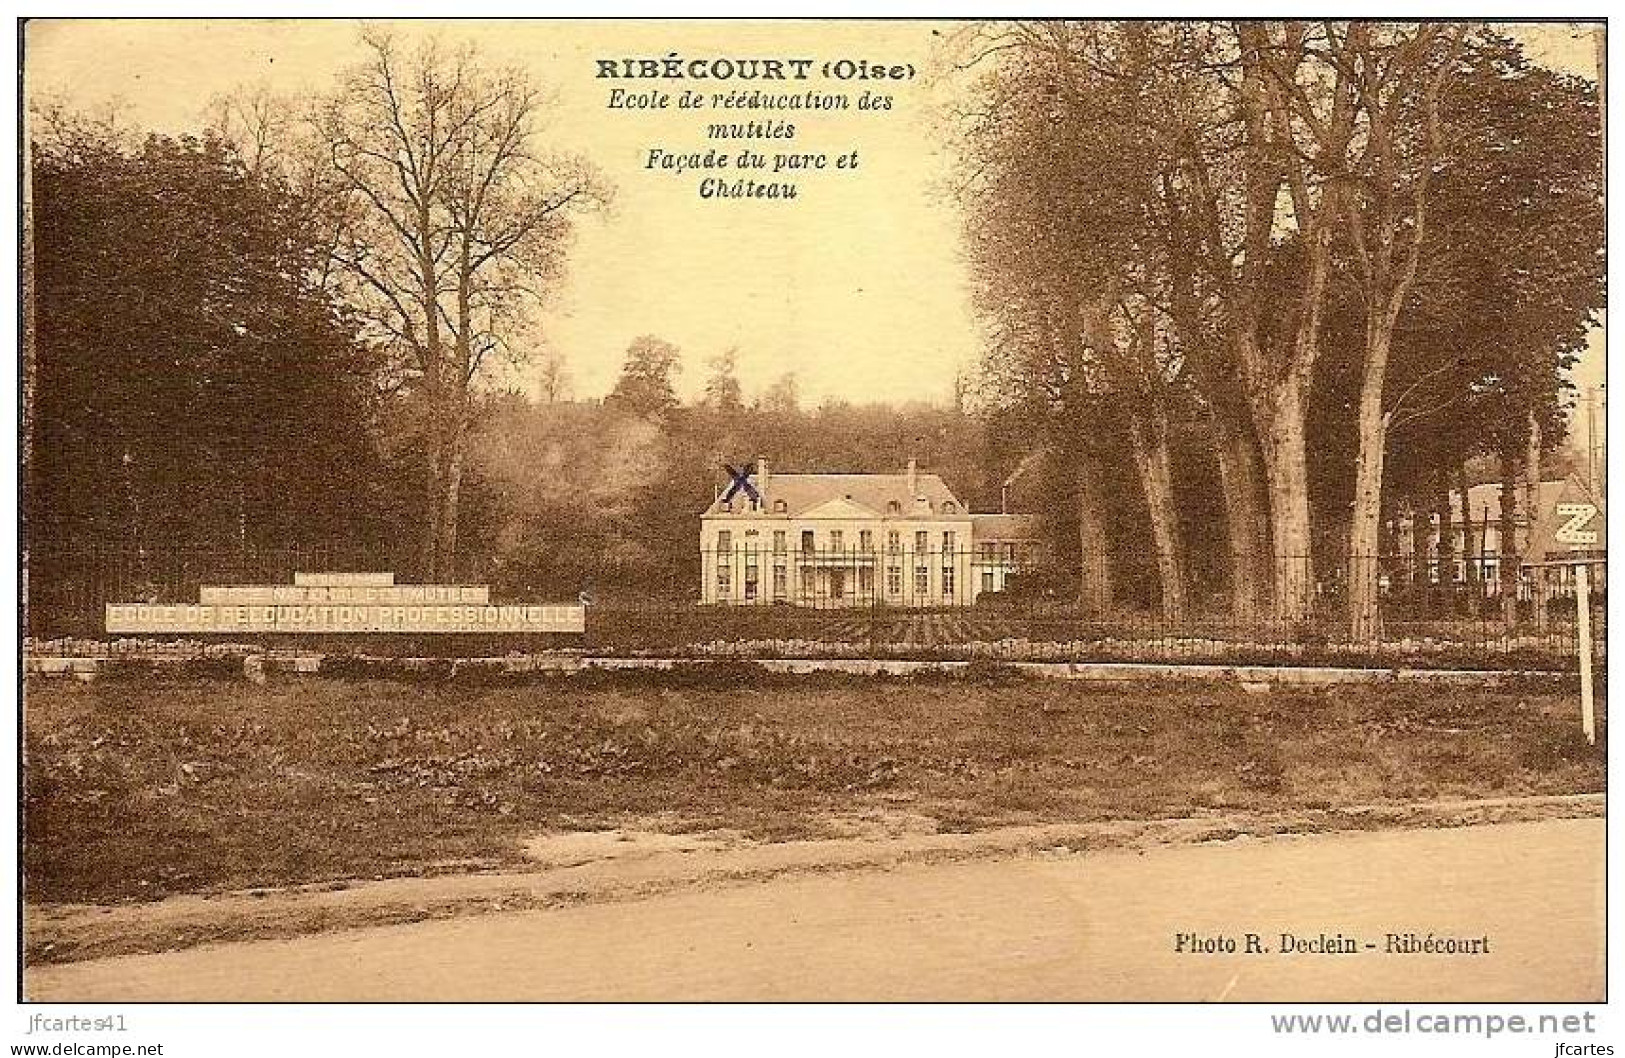 60 - RIBECOURT - Ecole De Réeducation Des Mutilés - Façade Du Parc Et Château - Ribecourt Dreslincourt